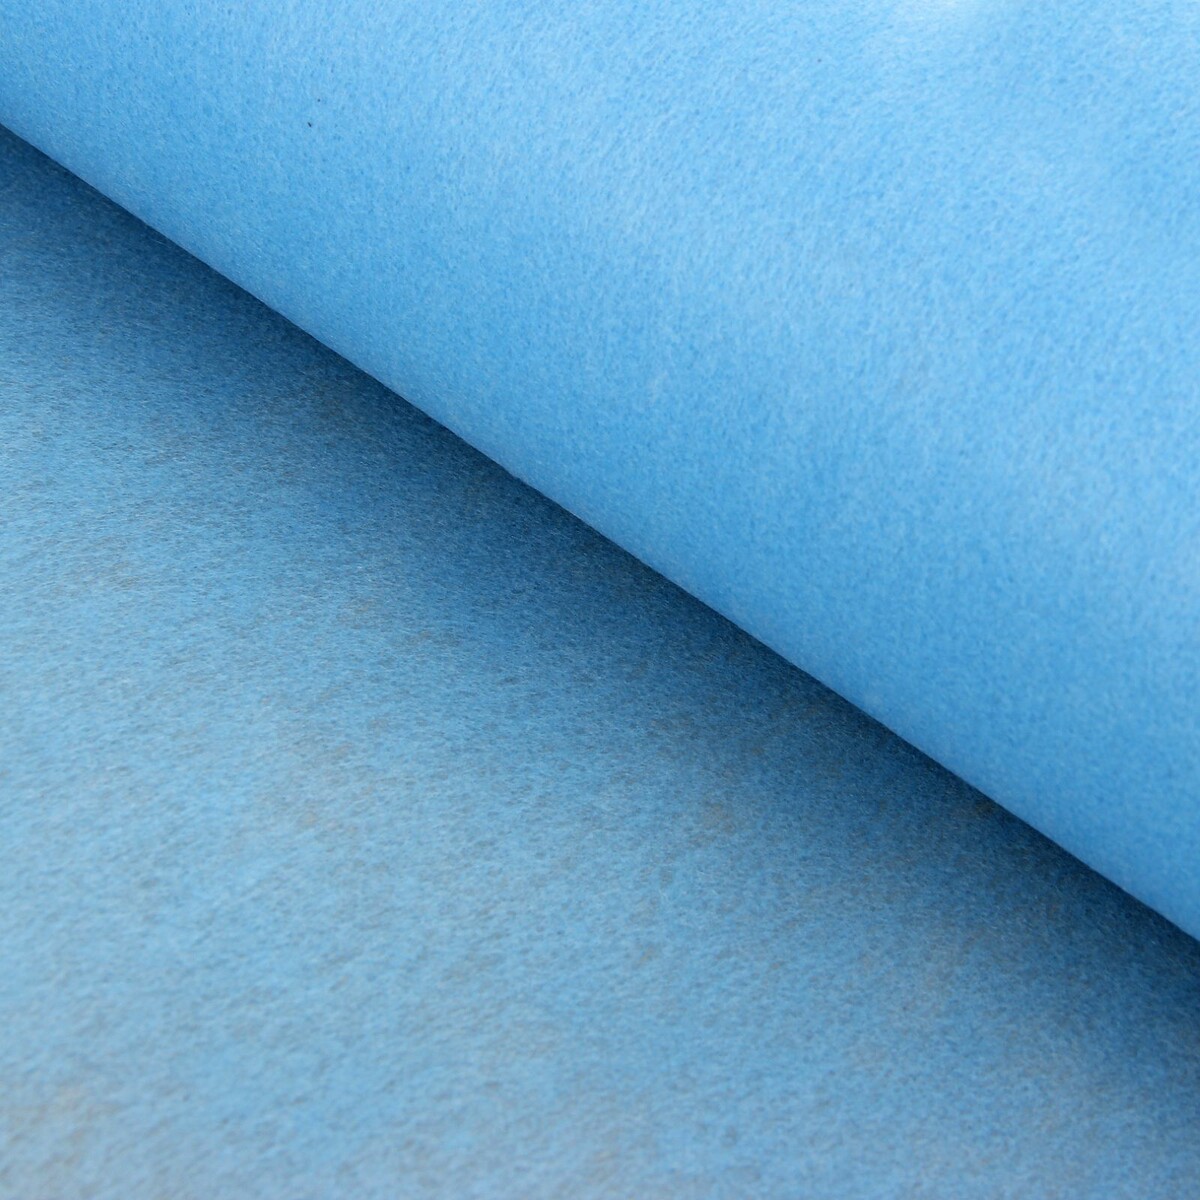 Фетр для упаковок и поделок, однотонный, голубой, двусторонний, рулон 1шт., 50 см x 15 м фетр для упаковок и поделок однотонный оливковый двусторонний зеленый рулон 1шт 50 см x 15 м